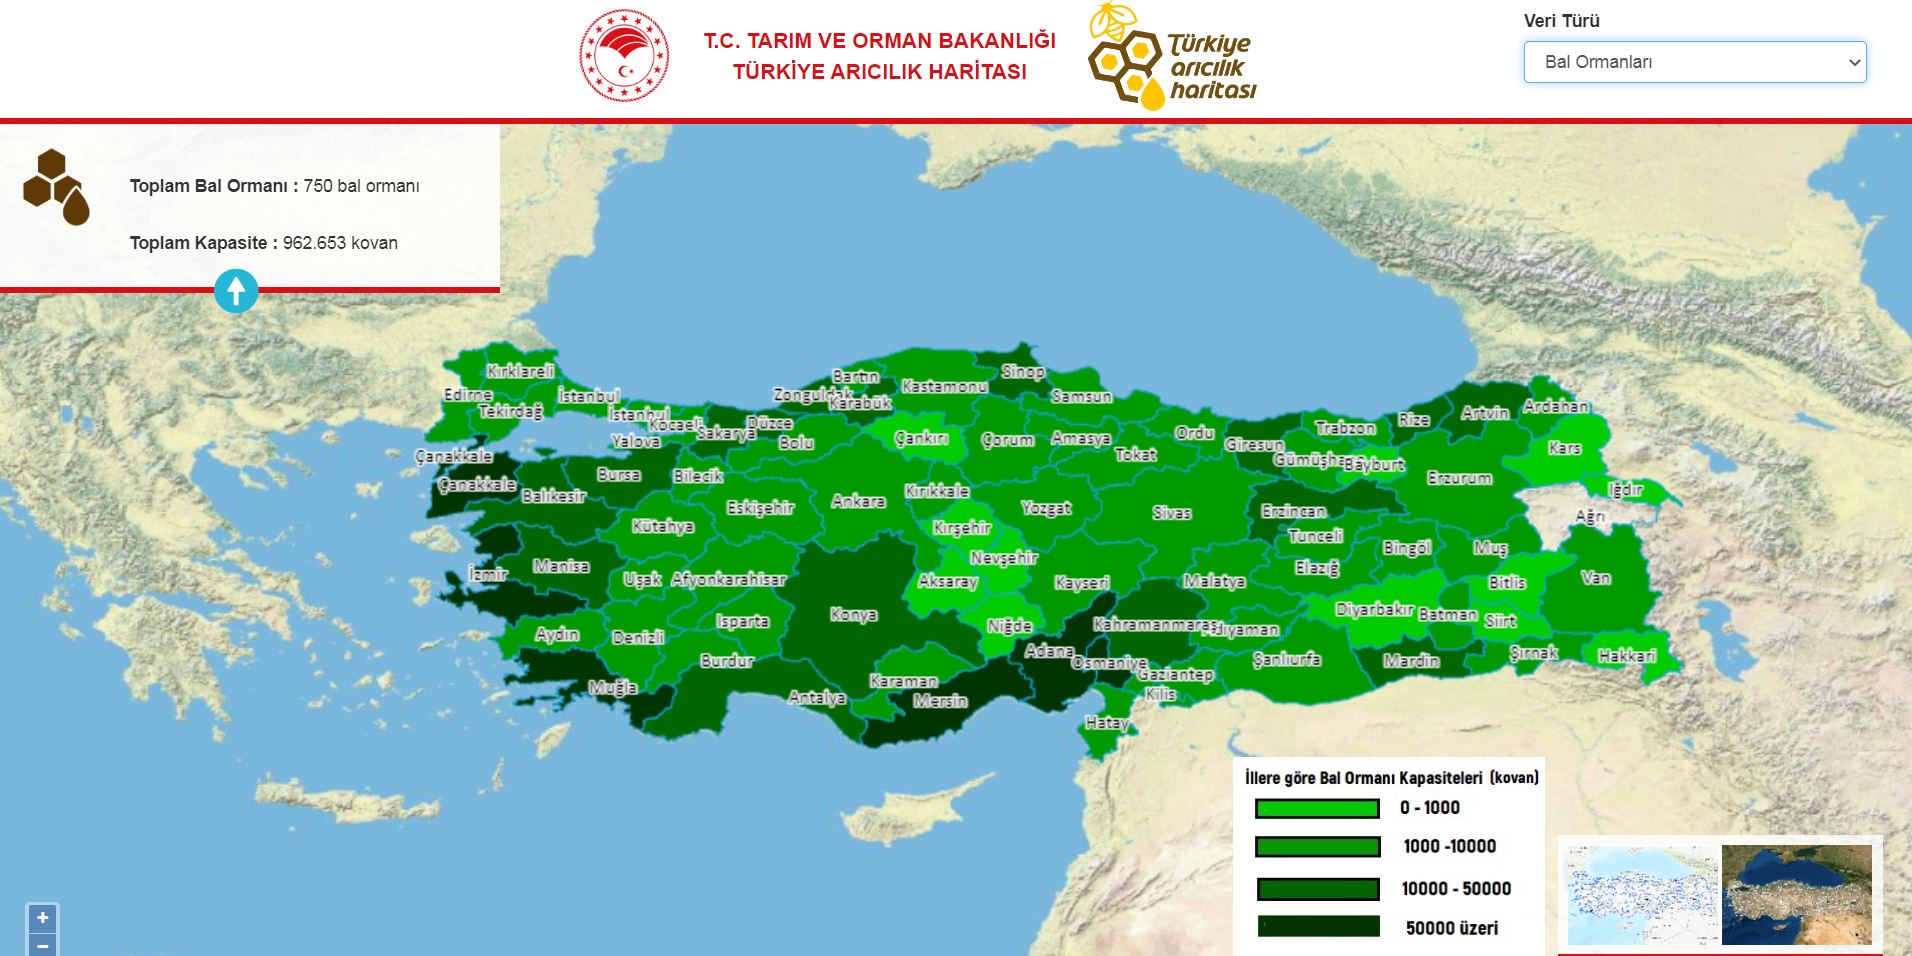 turkiye-aricilik-haritasi-guncellendi-9279-dhaphoto2.jpg